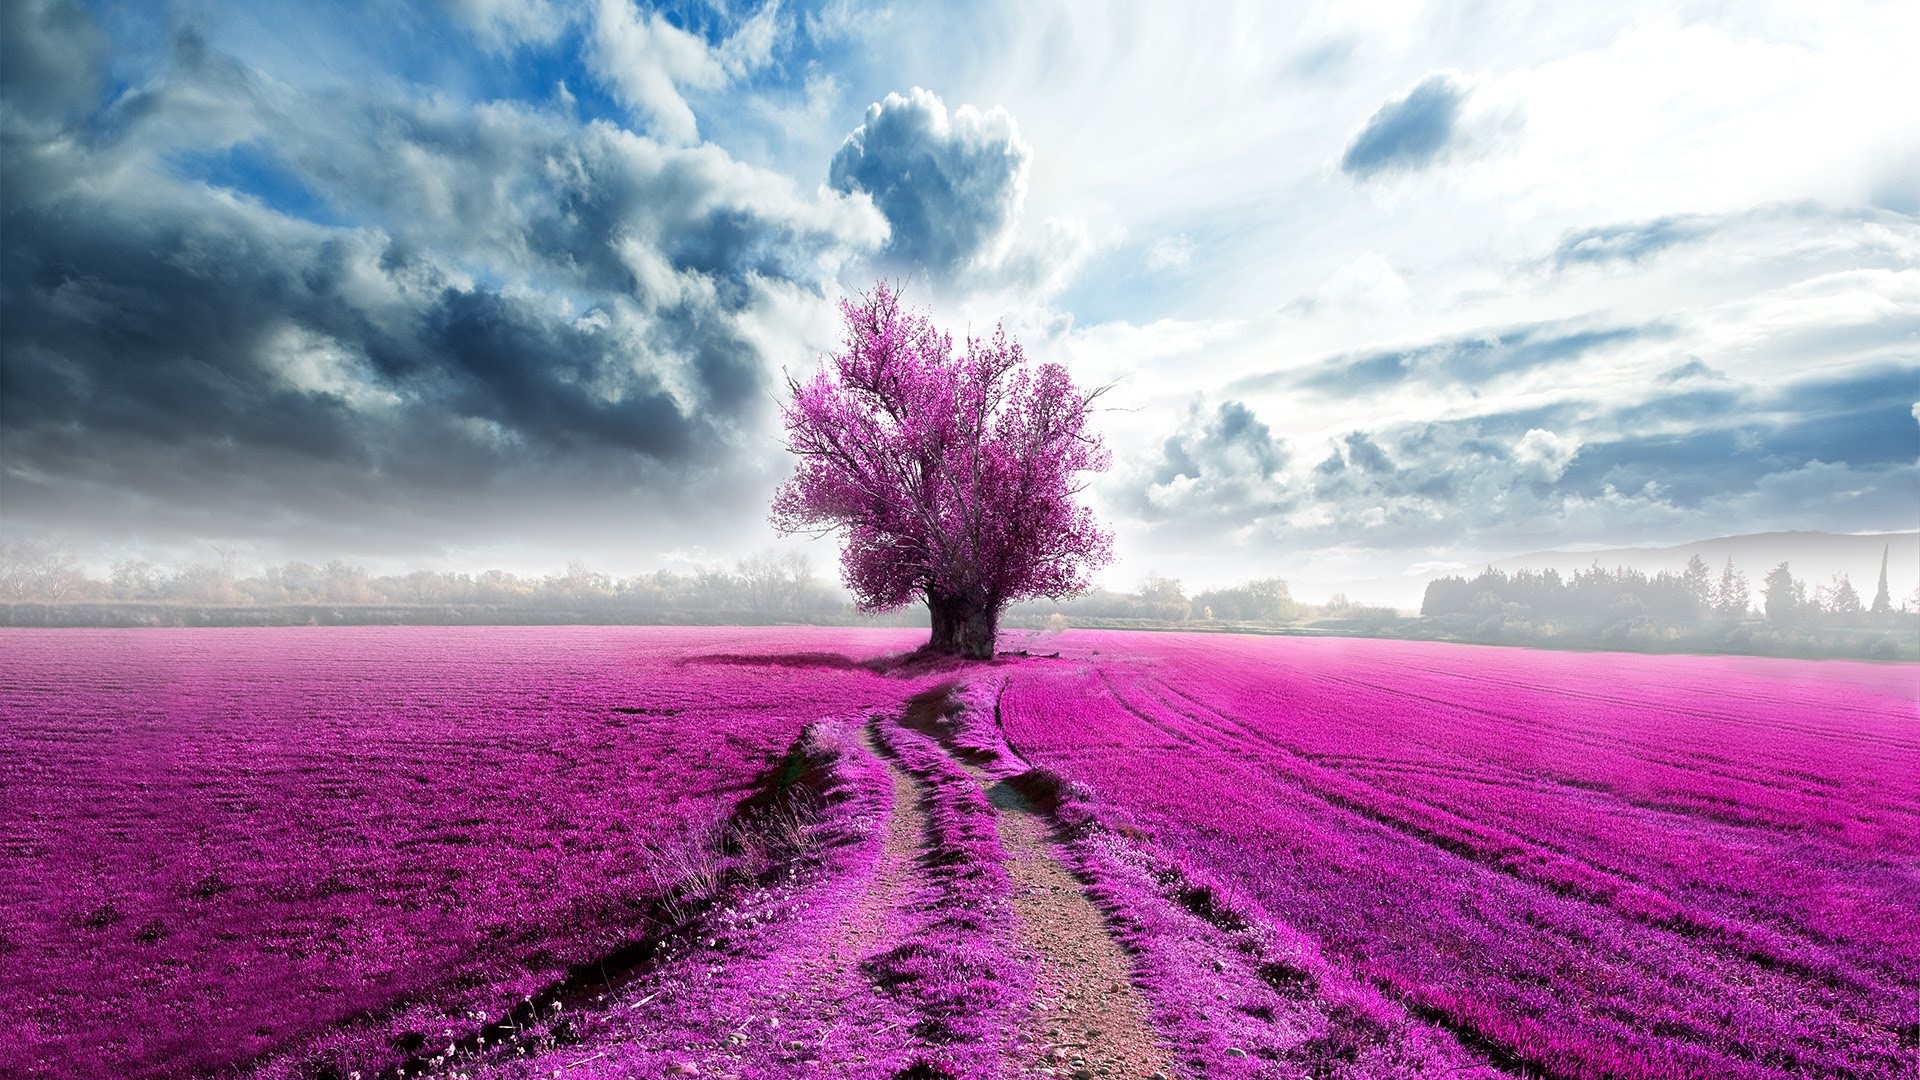 Pink lavender landscape